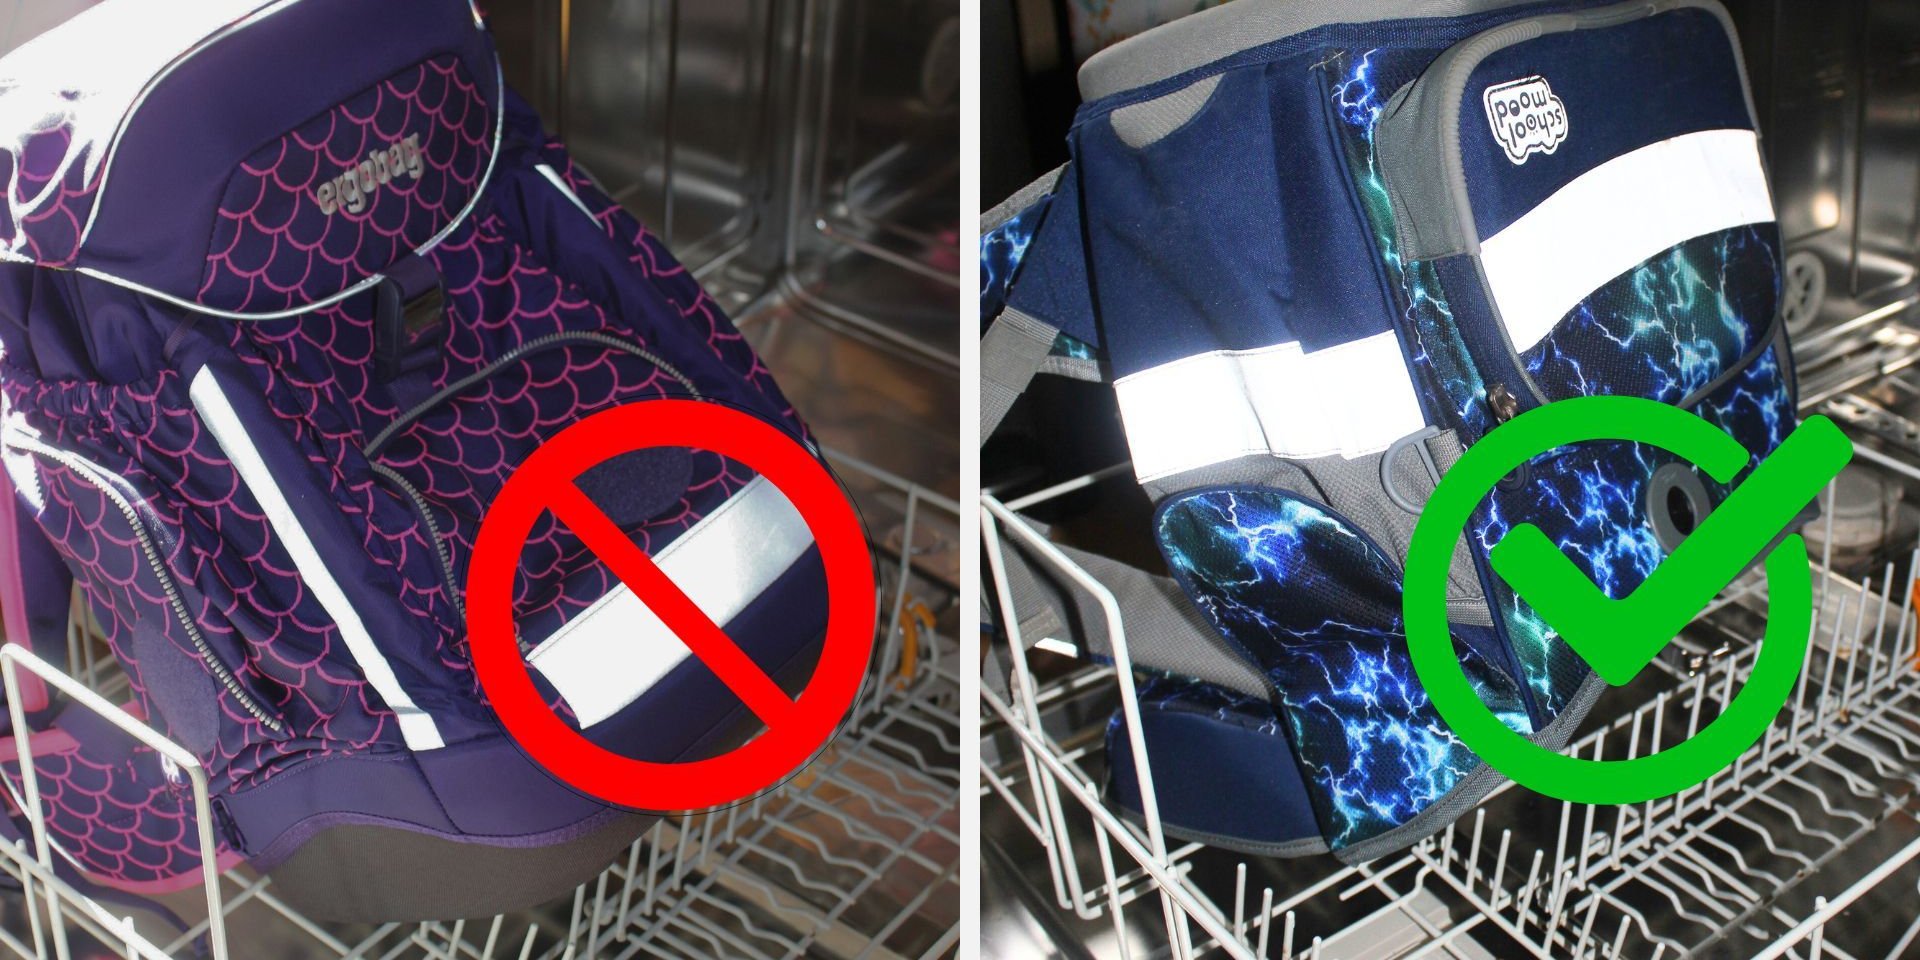 Schulranzen reinigen in der Spülmaschine: Nur diese Ranzen dürfen in die Maschine